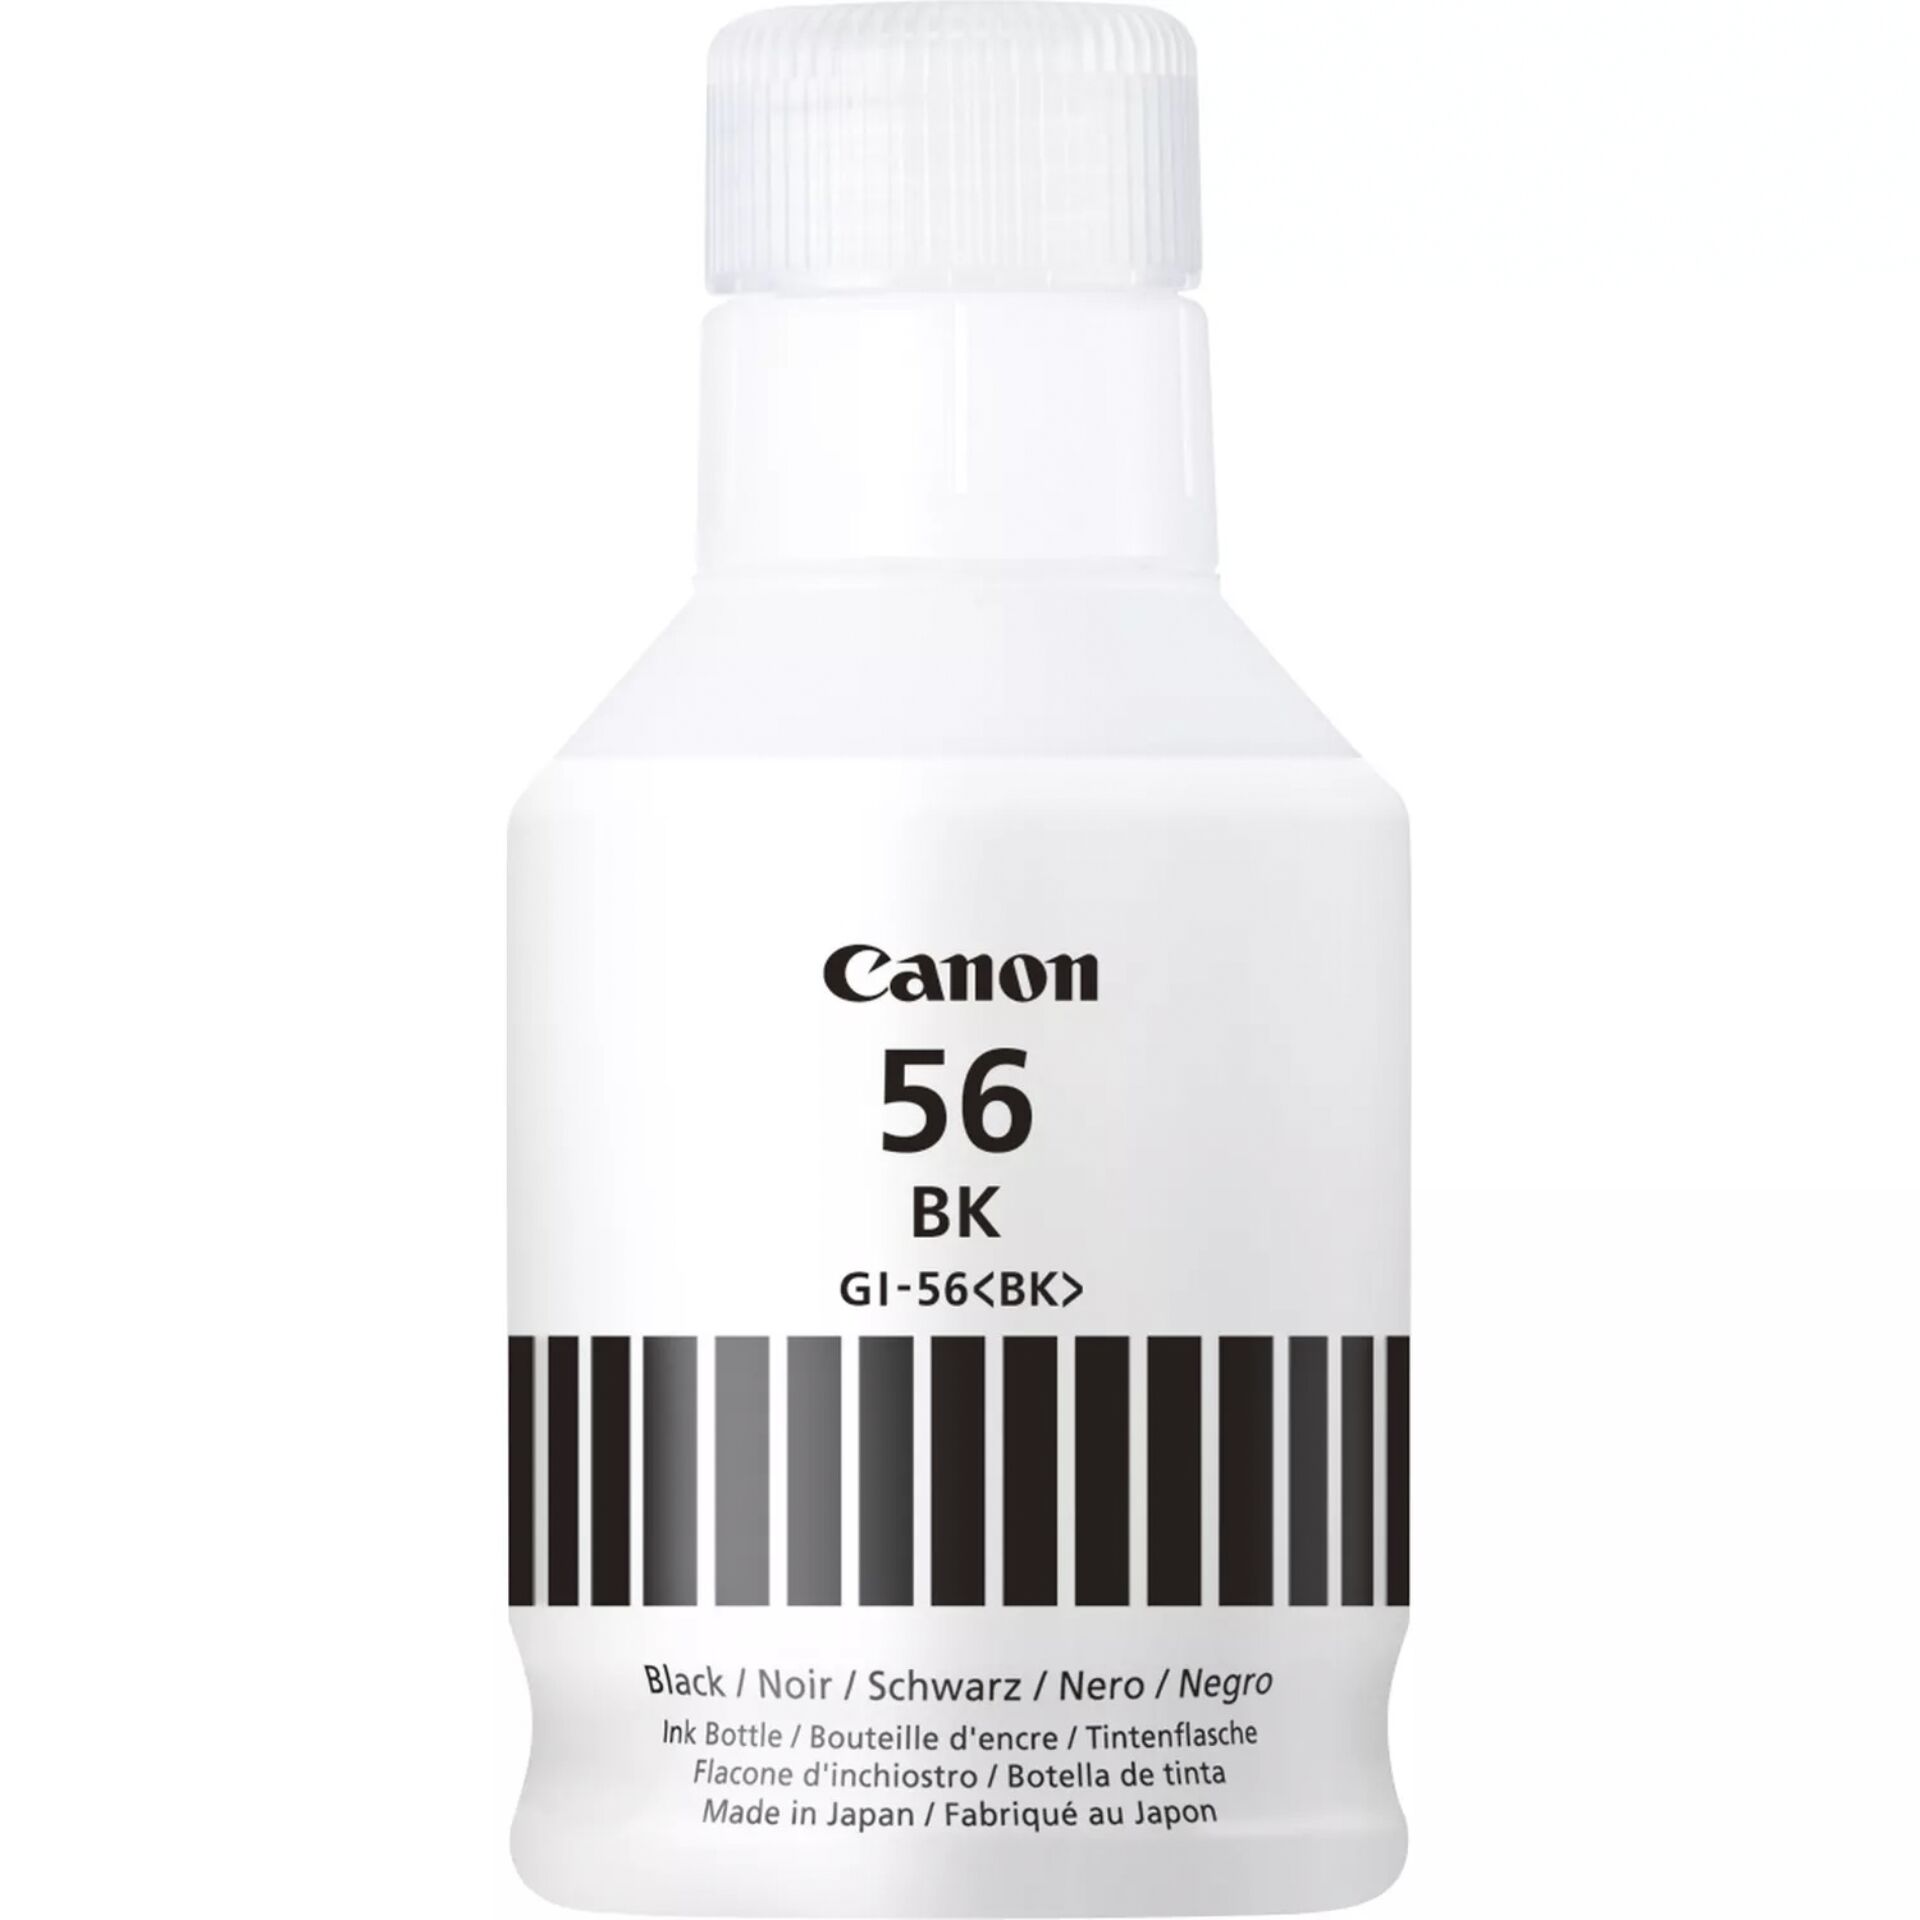 Canon Tinte GI-56BK schwarz, Original Zubehör 6000 Seiten, 135ml)